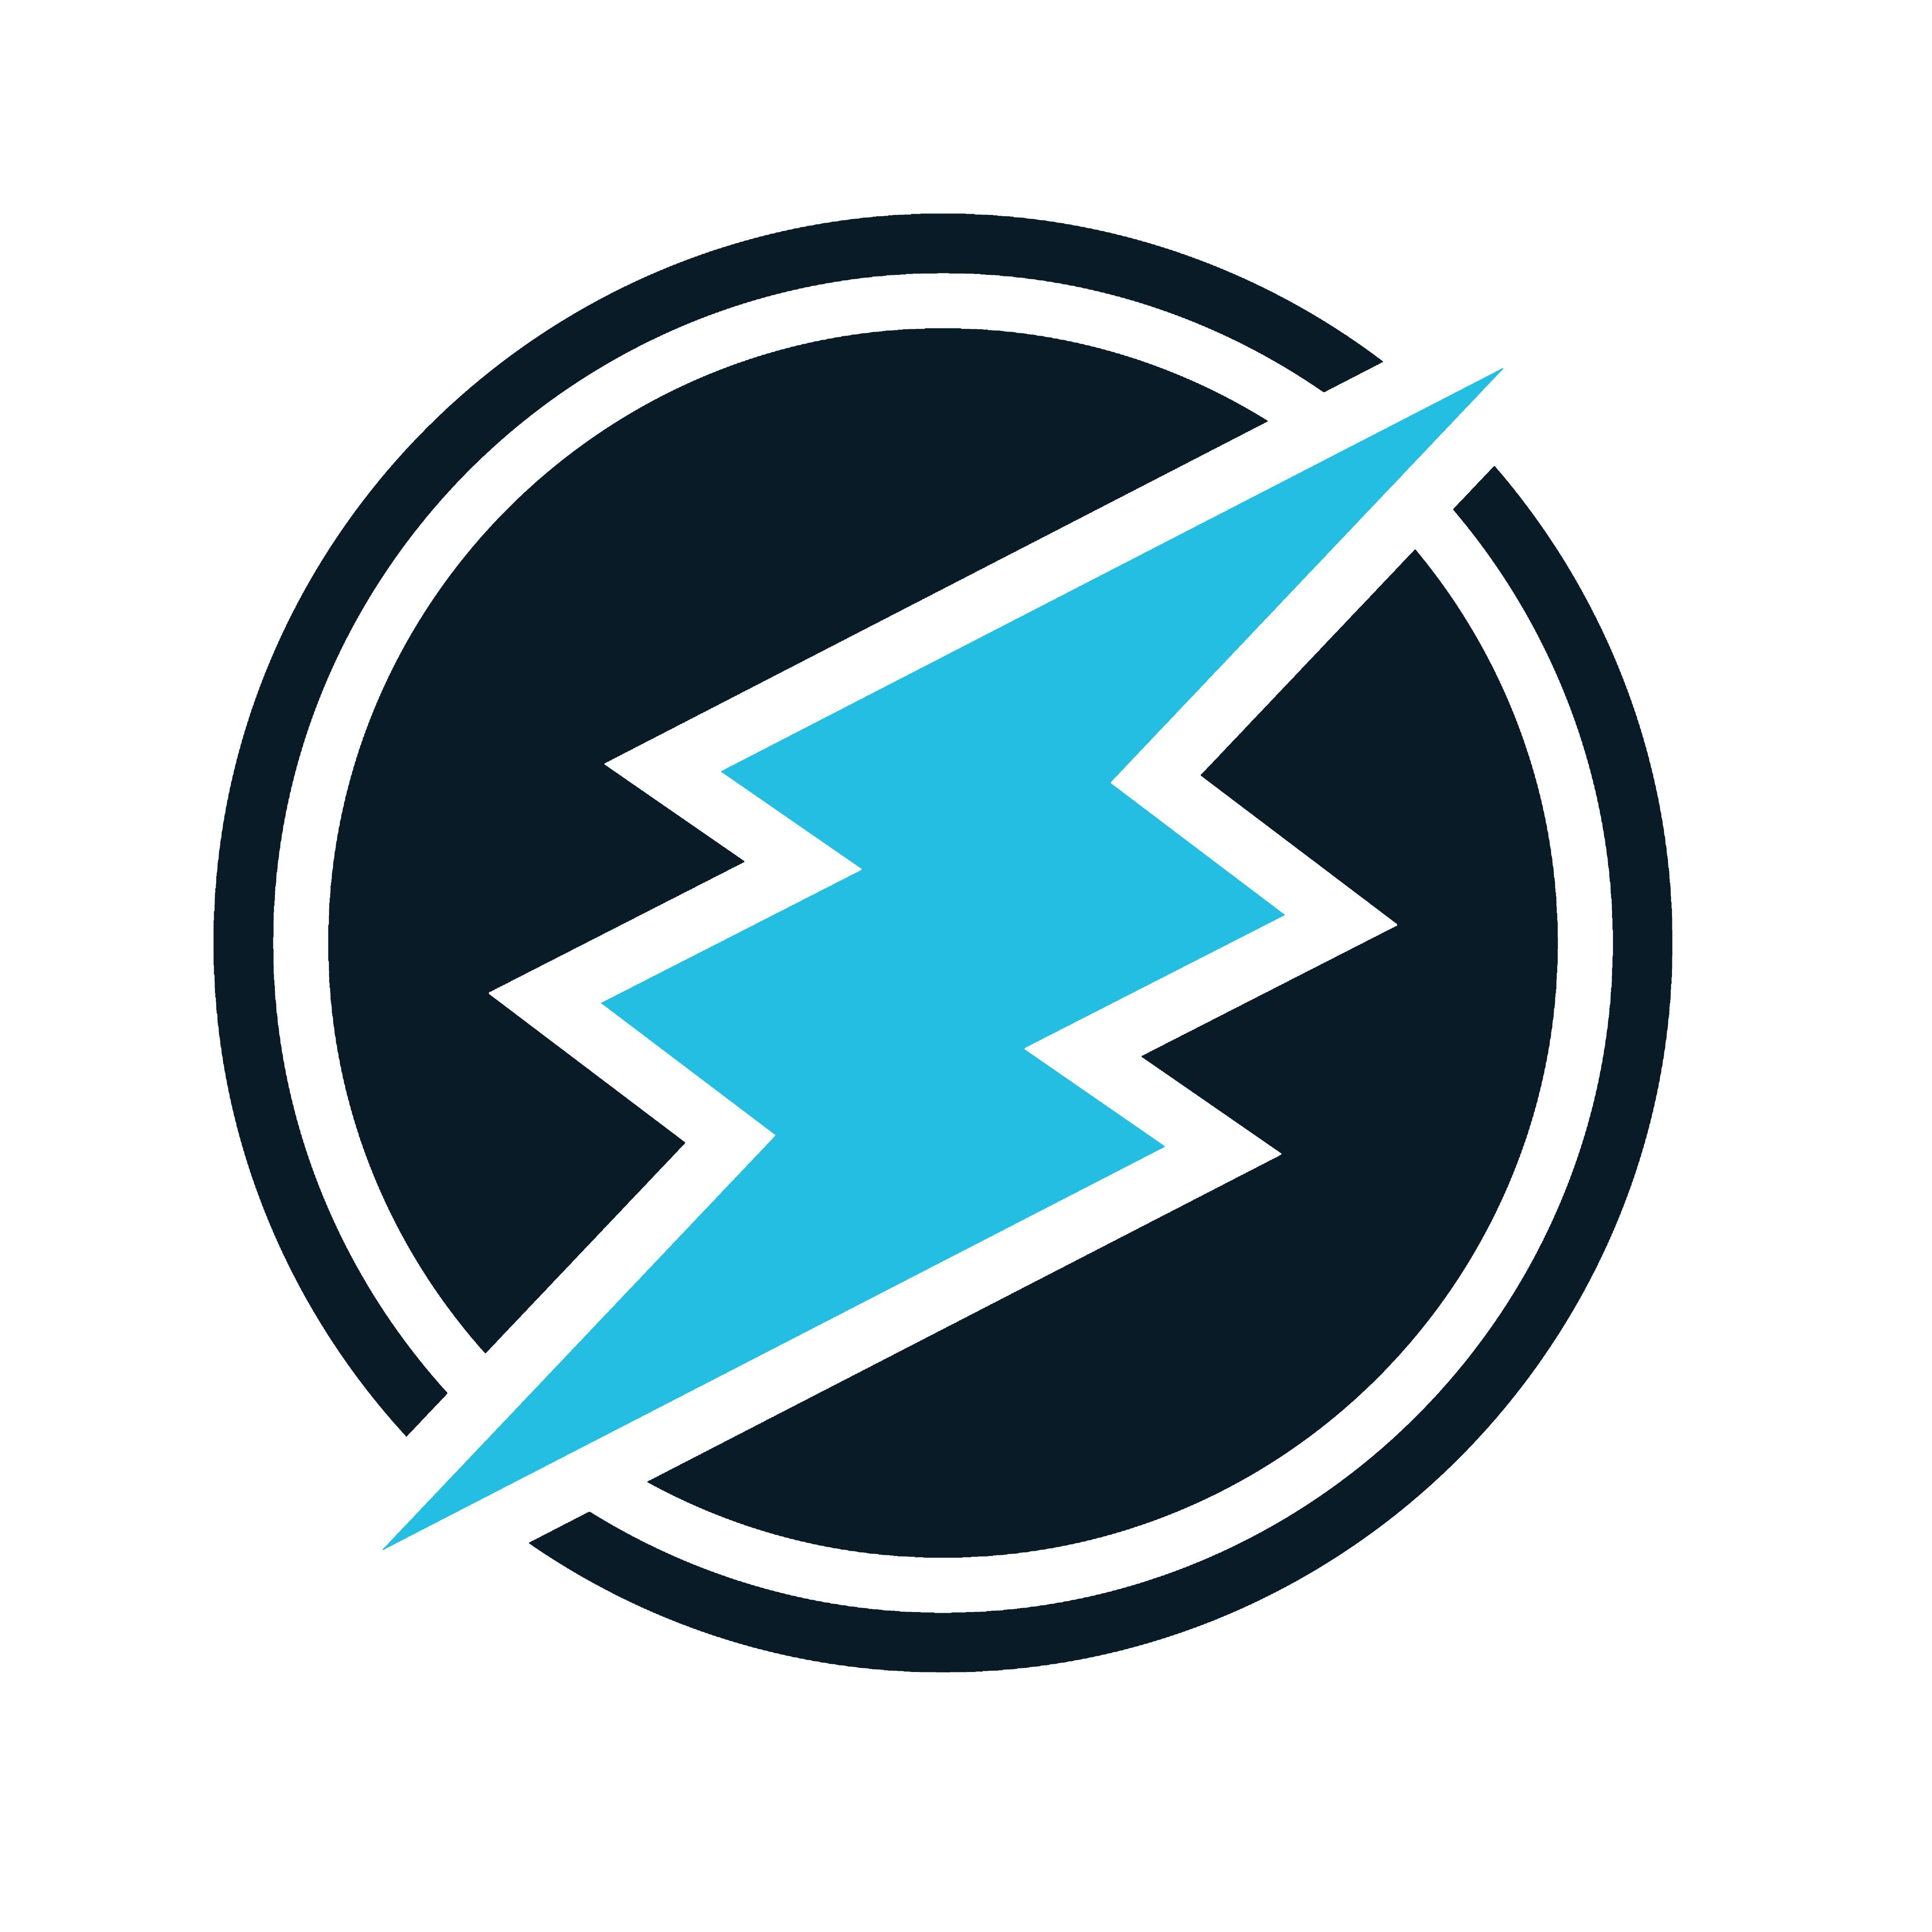 Electro Logo - Electroneum Logo Wallpaper